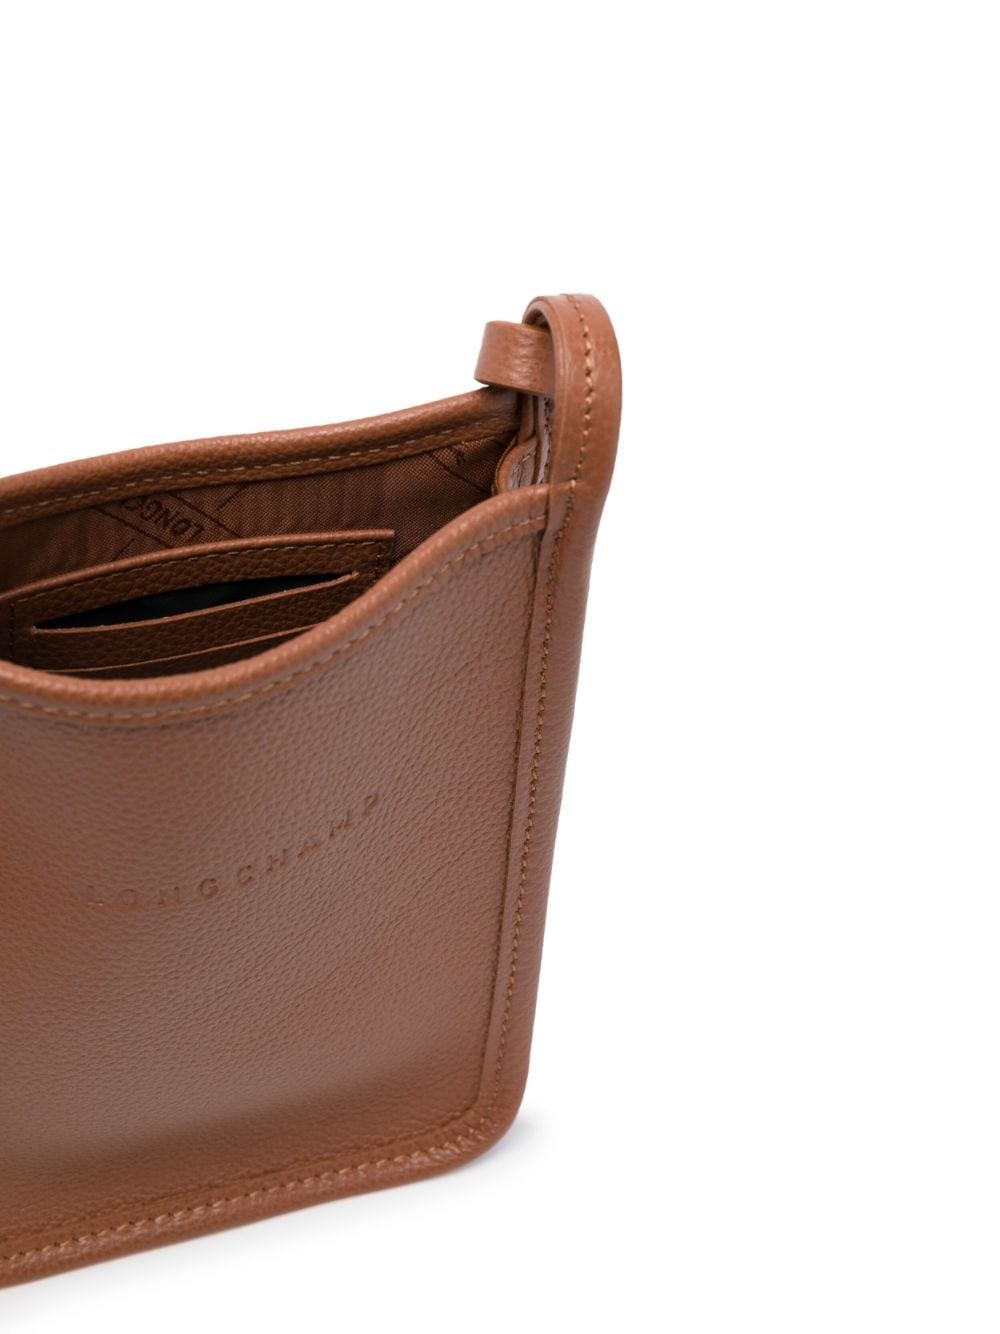 Le FoulonnÃ© leather mini bag - 6